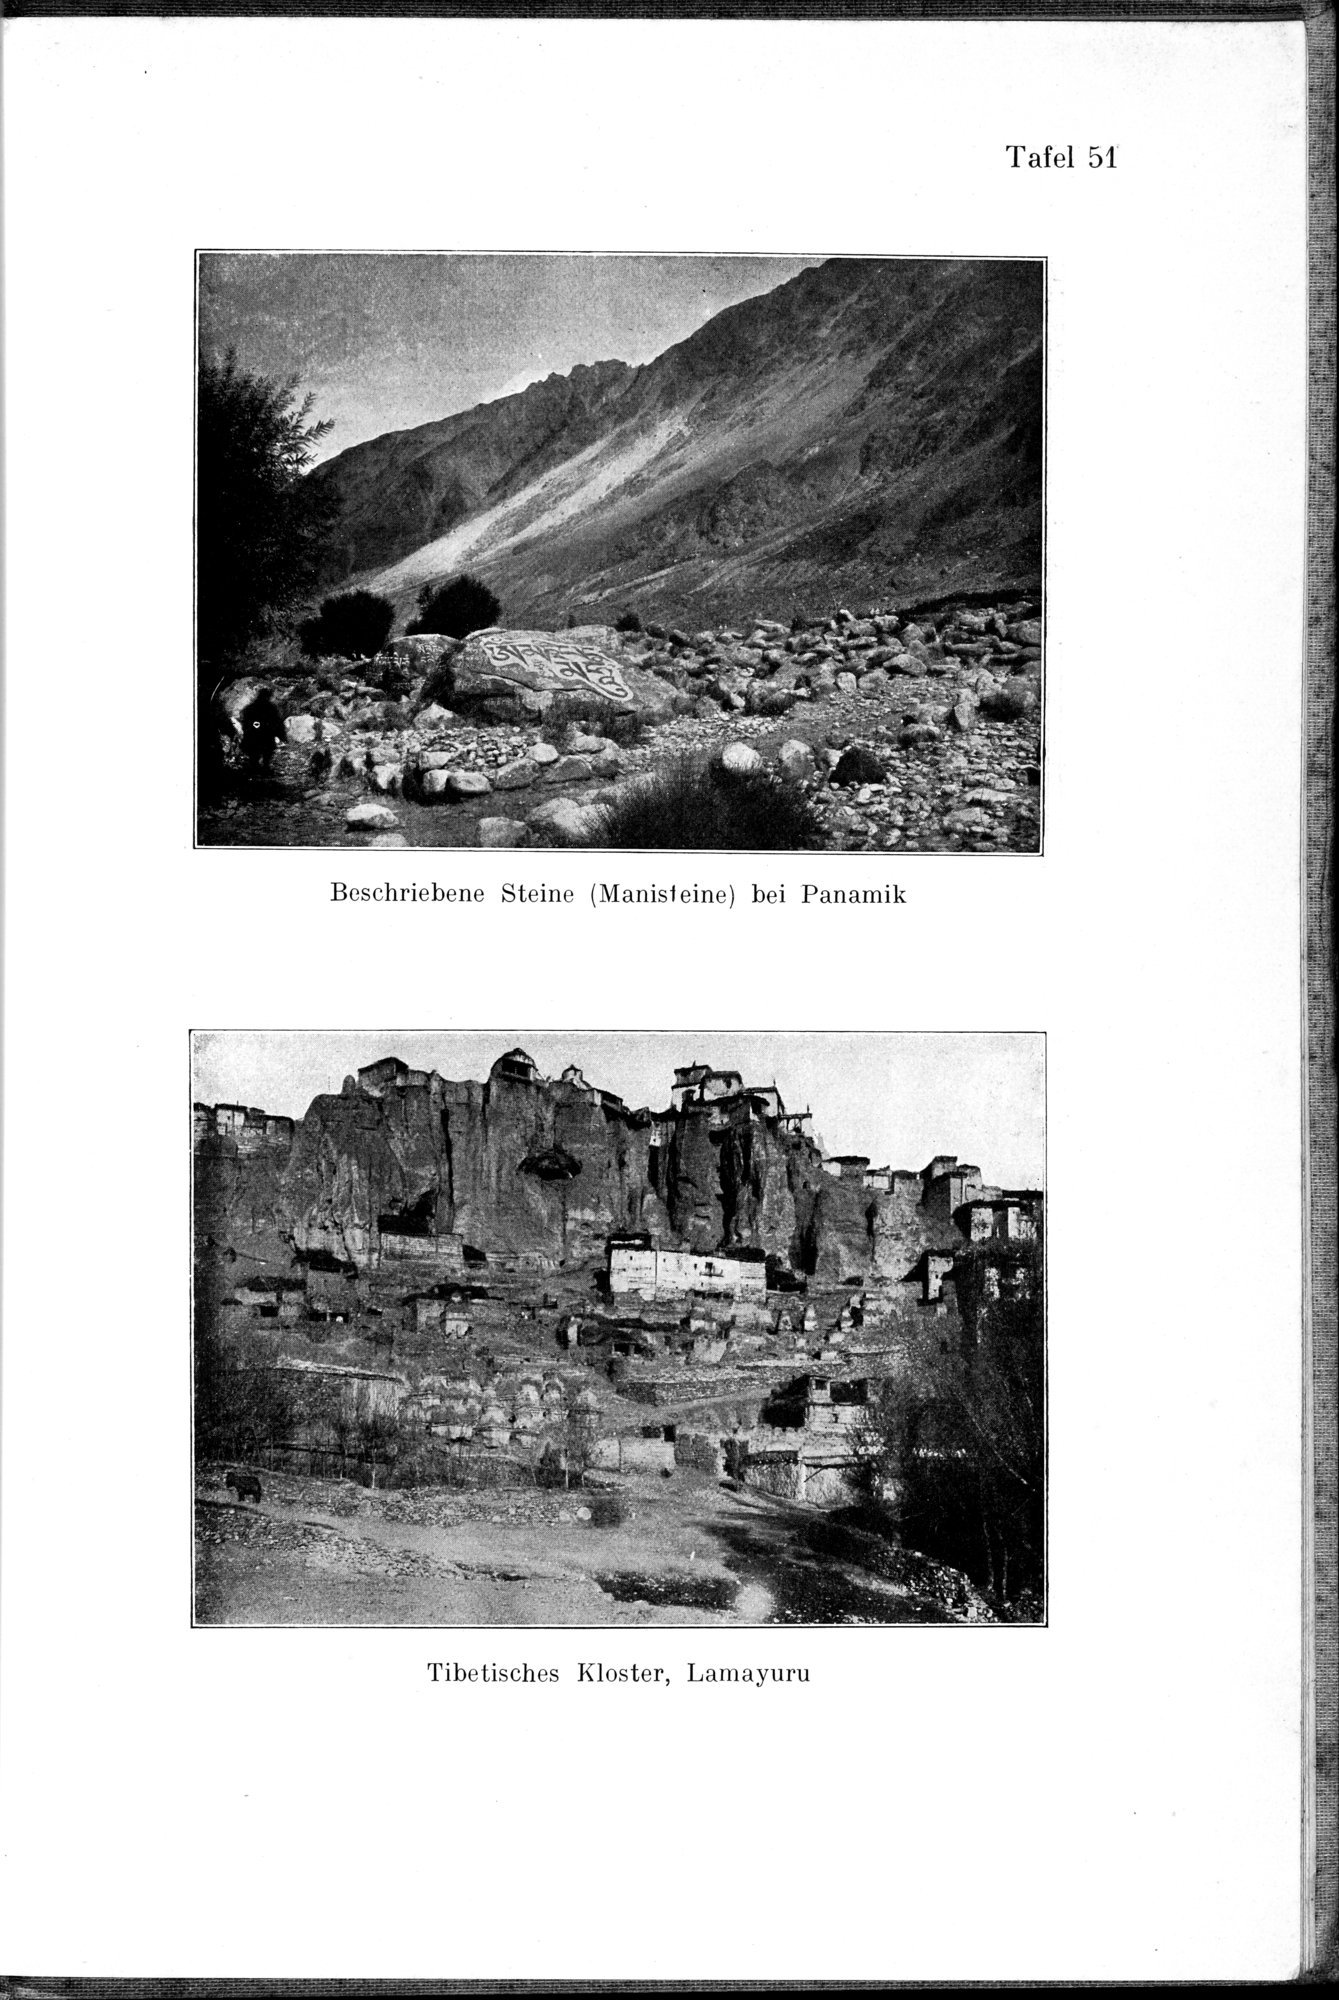 Auf Hellas Spuren in Ostturkistan : vol.1 / Page 219 (Grayscale High Resolution Image)